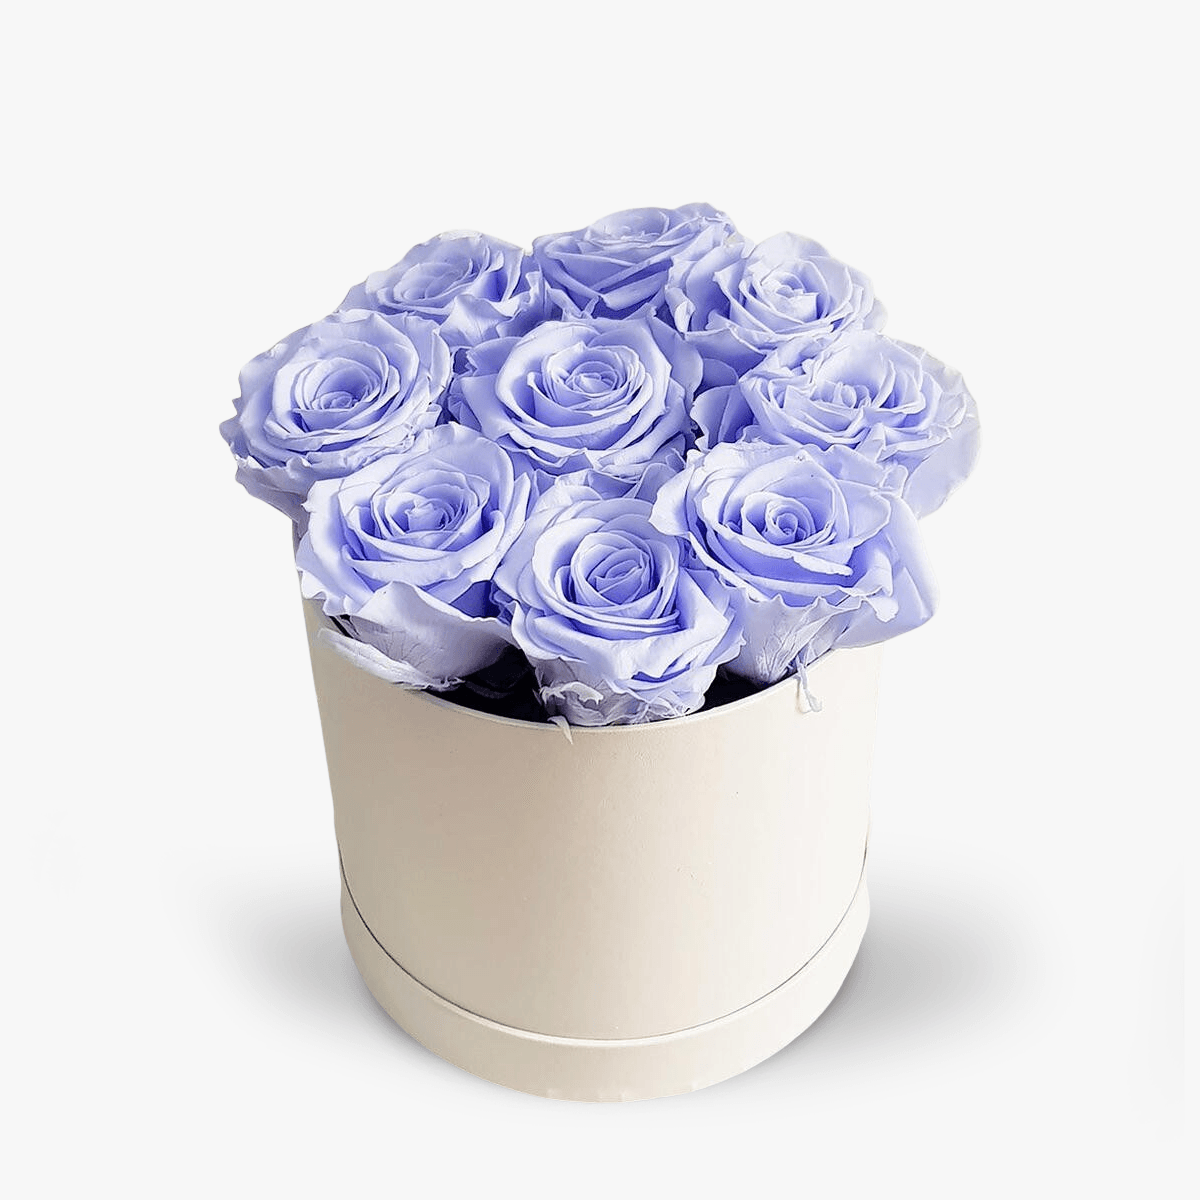 Cutie cu 9 trandafiri lavanda, criogenati – Standard criogenati